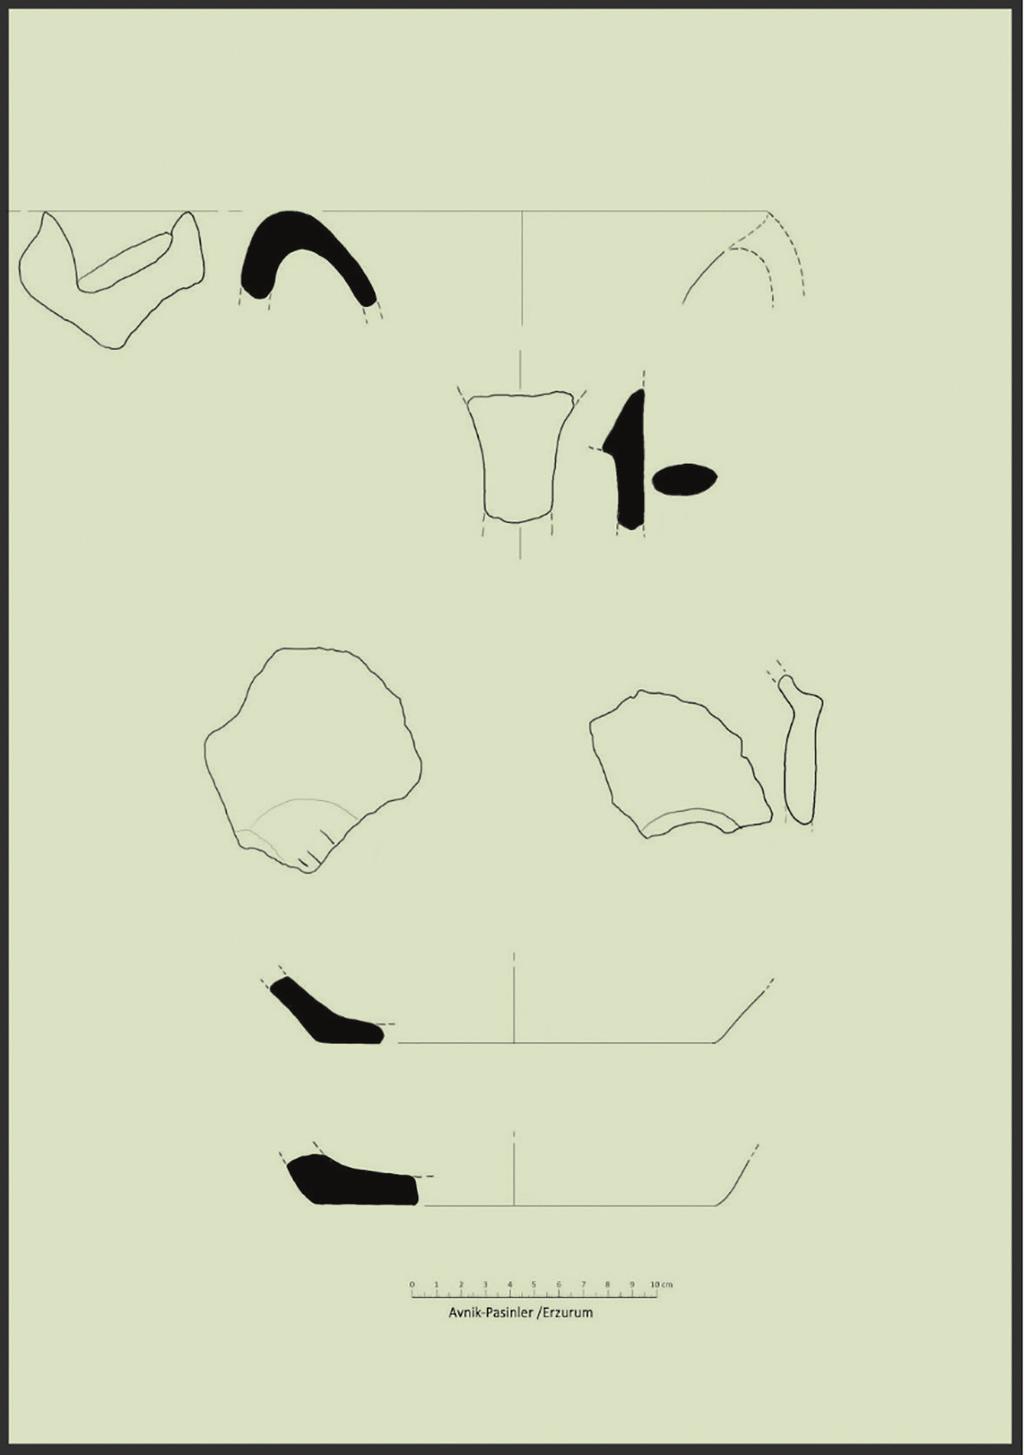 128 Yavuz GÜNAŞDI Figure 20: Keramik Çizimleri / Ceramic Drawings aşağıya doğru inmektedir.